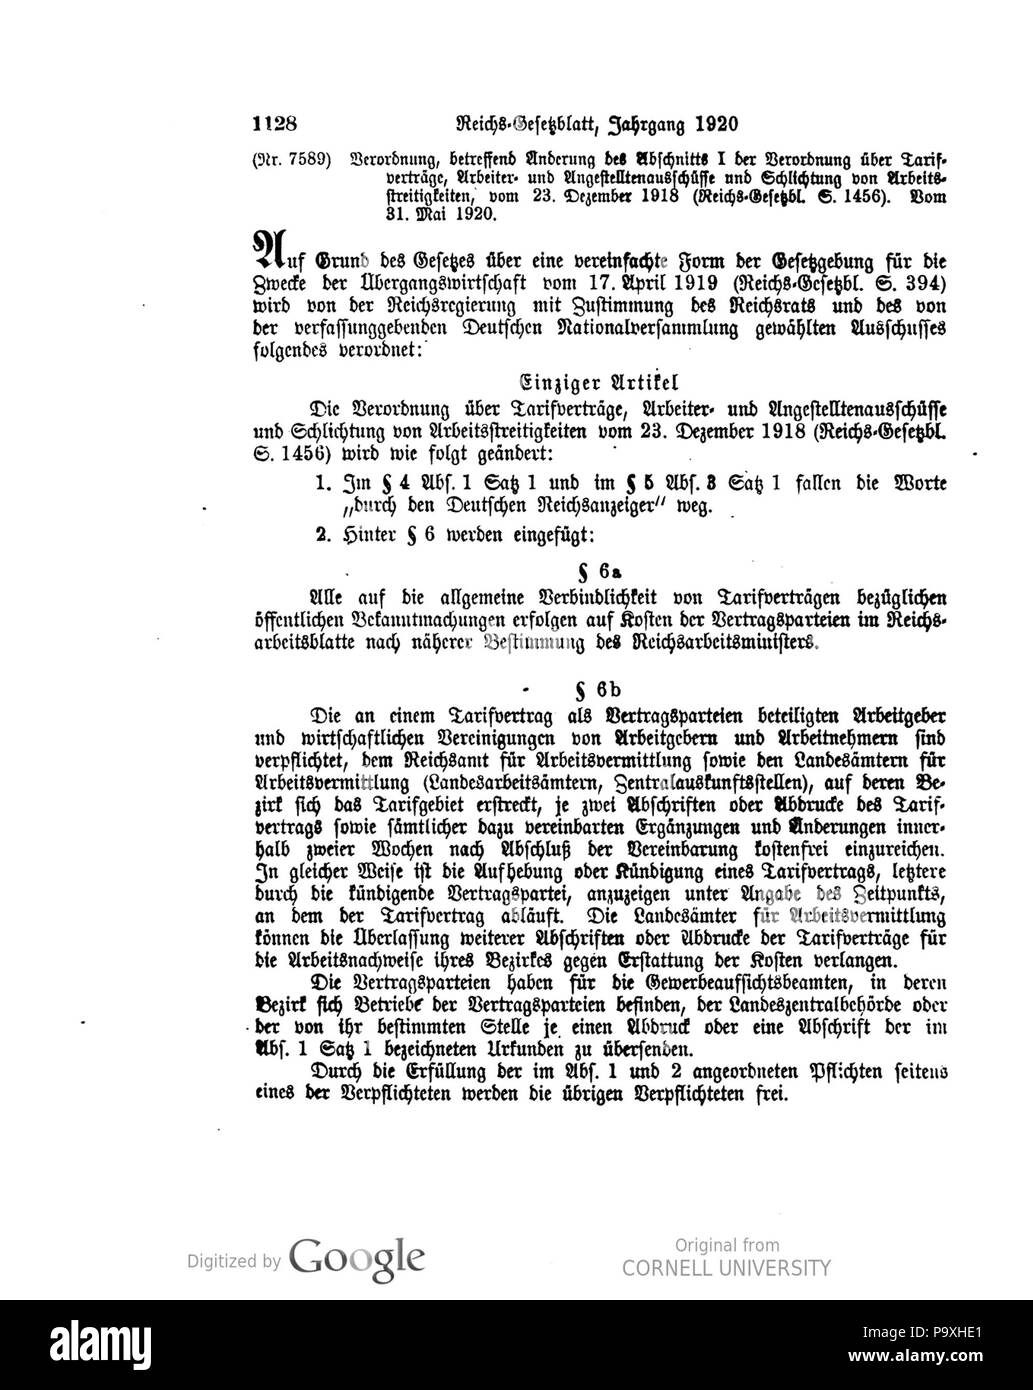 504 Deutsches Reichsgesetzblatt 1920 125 1128 Stock Photo